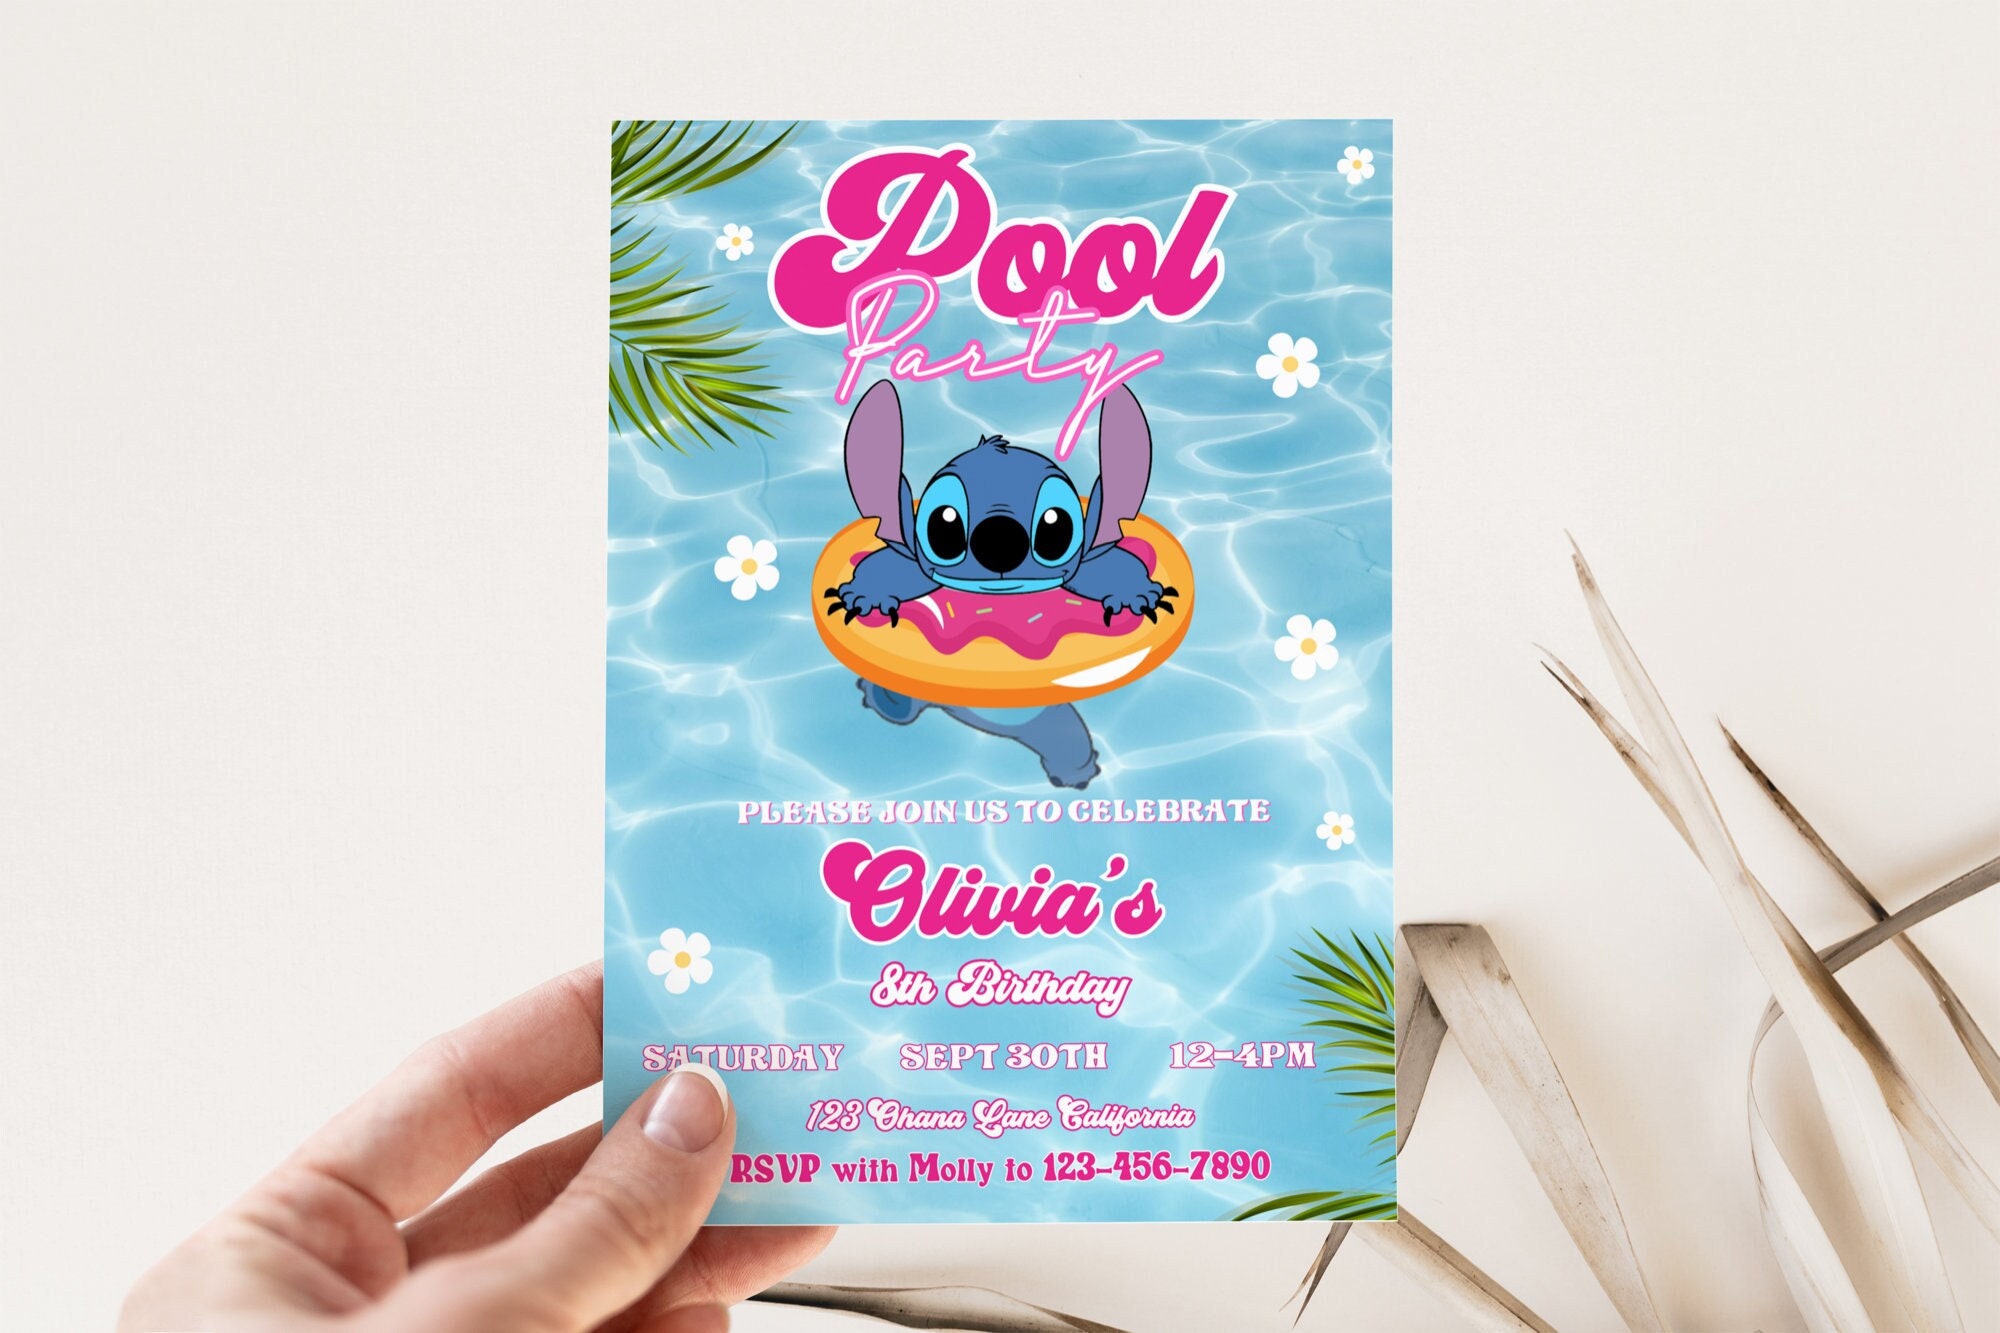 FREE Lilo & Stitch Beach Party Birthday Invitation Templates  Birthday  invitations, Beach birthday party, Lilo and stitch